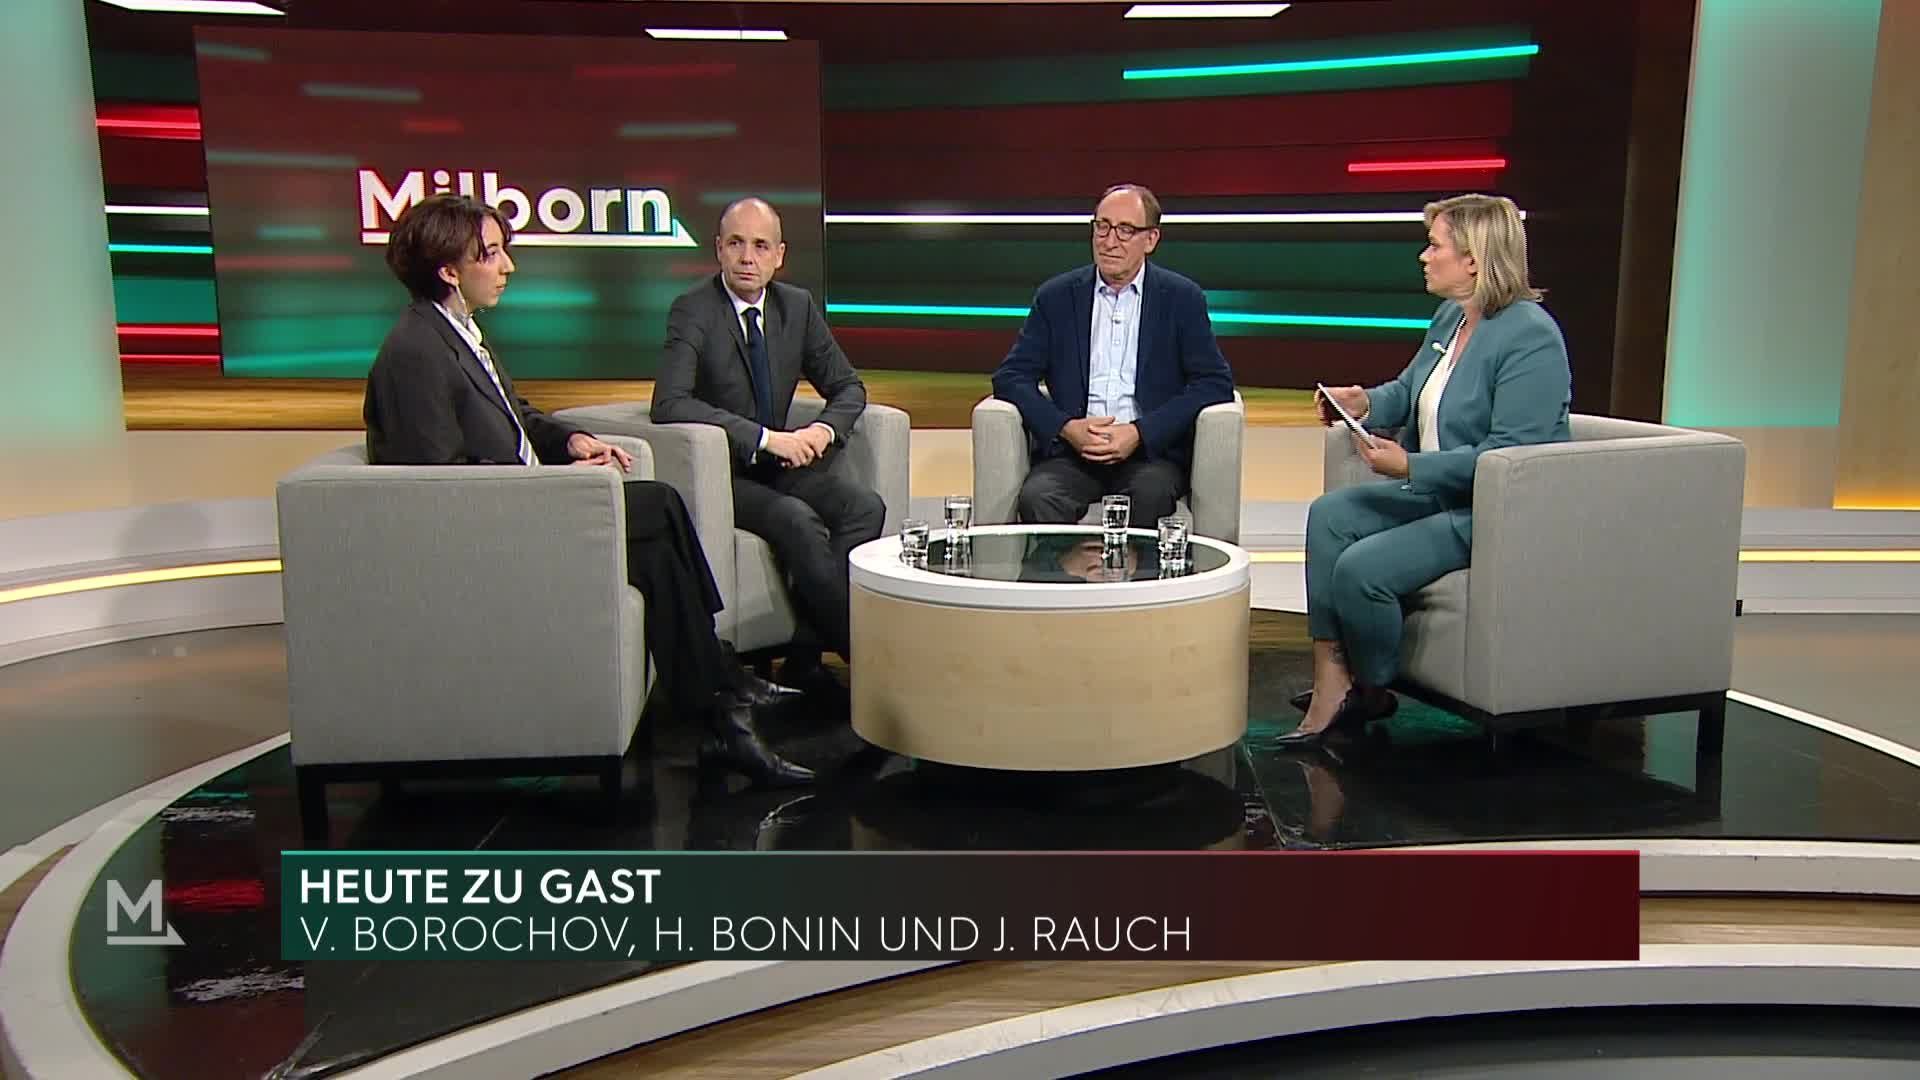 Victoria Borochov, Holger Bonin und Johannes Rauch im Interview bei Milborn